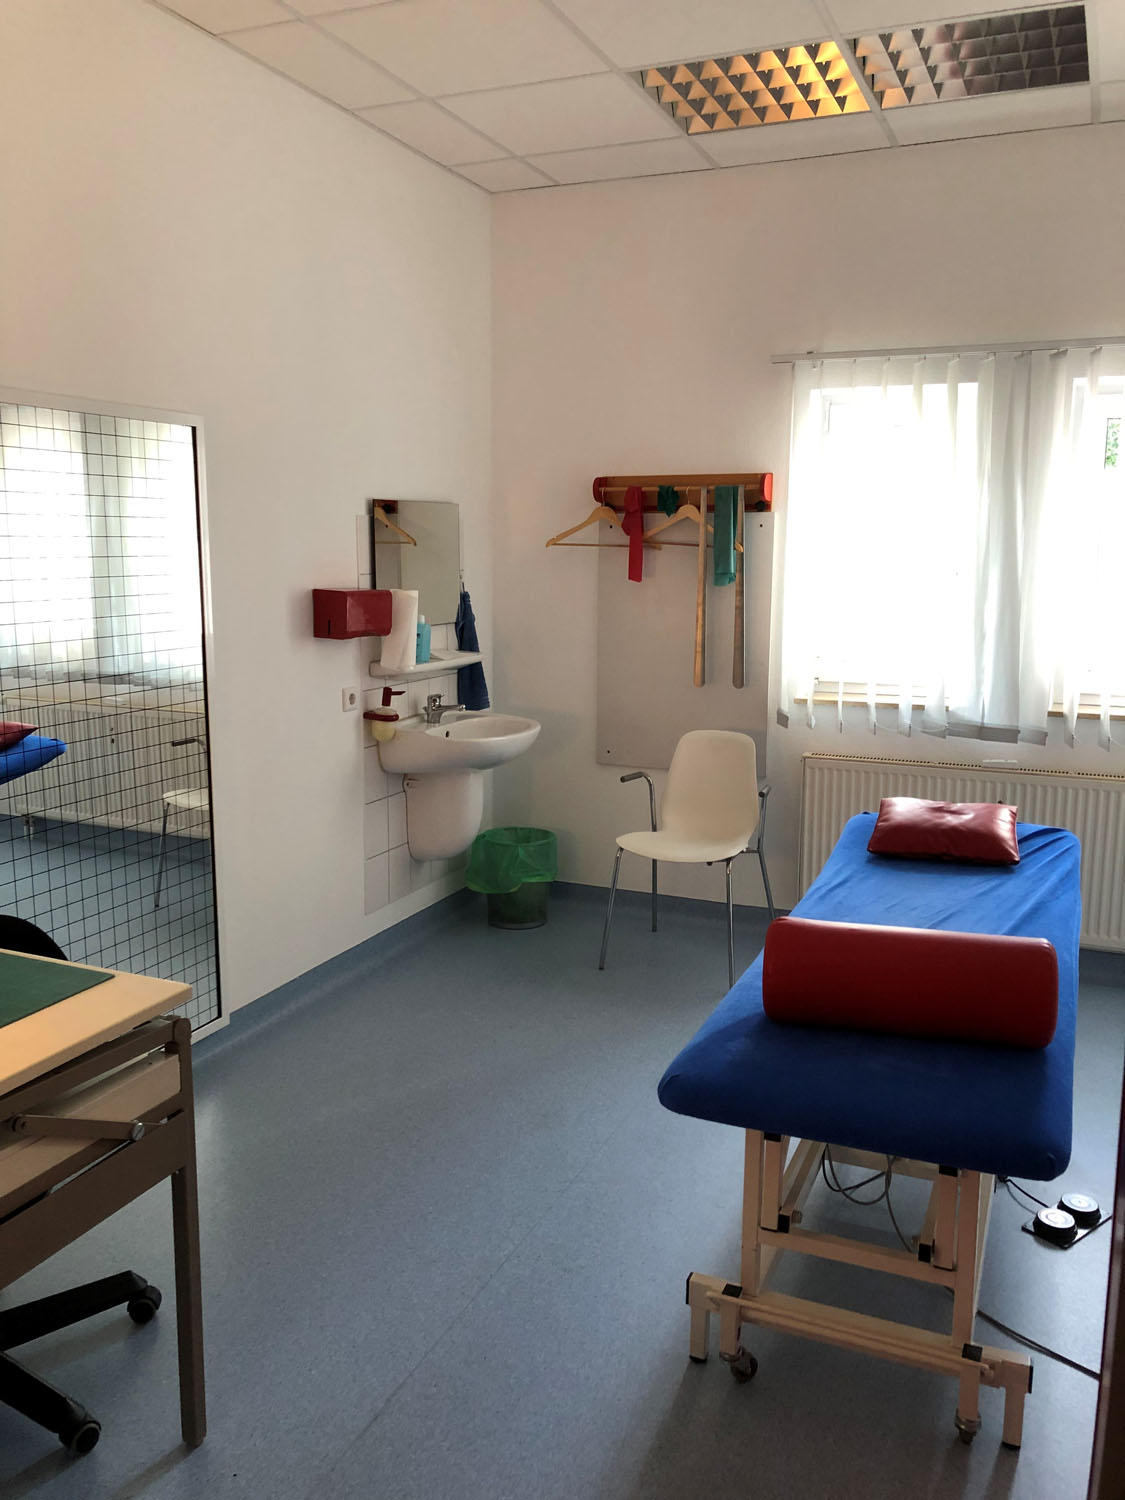 REHA-ZENTRUM Praxis für Ambulante Rehabilitation Siegfried Peter Braun, Europastraße 25/1 in Nürtingen